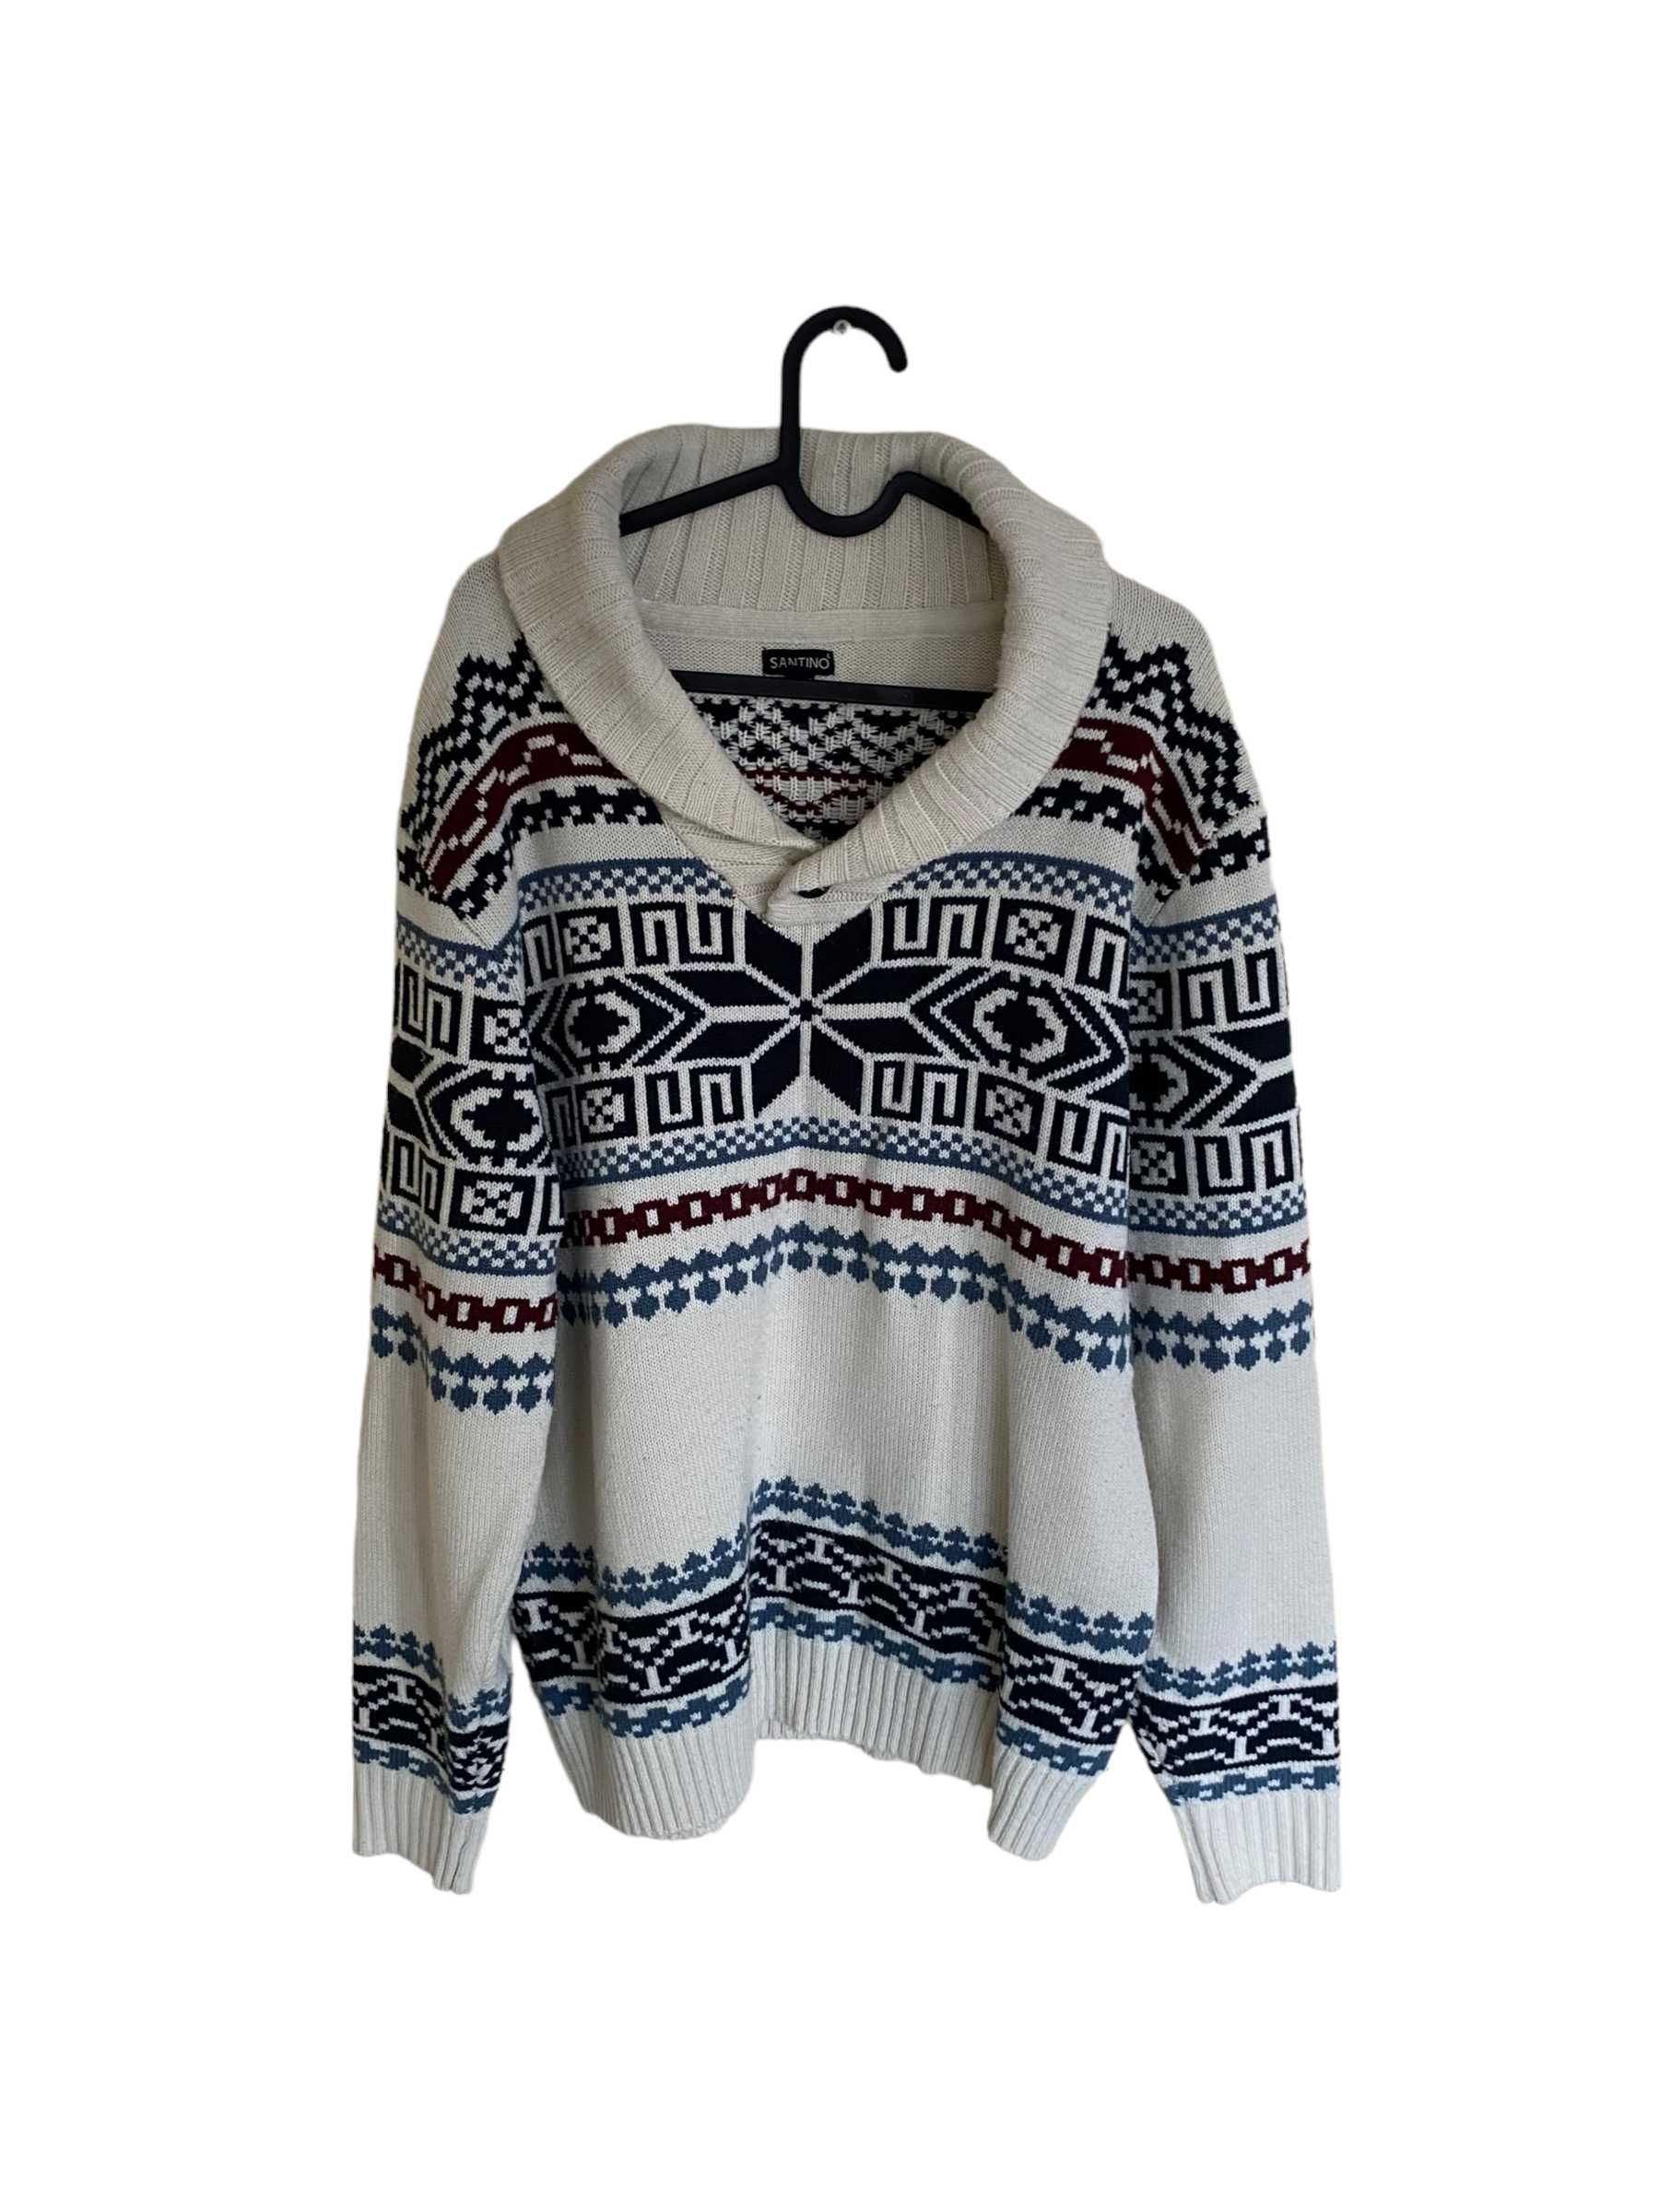 Norweski vintage sweter, kardigan, rozmiar S, stan bardzo dobry